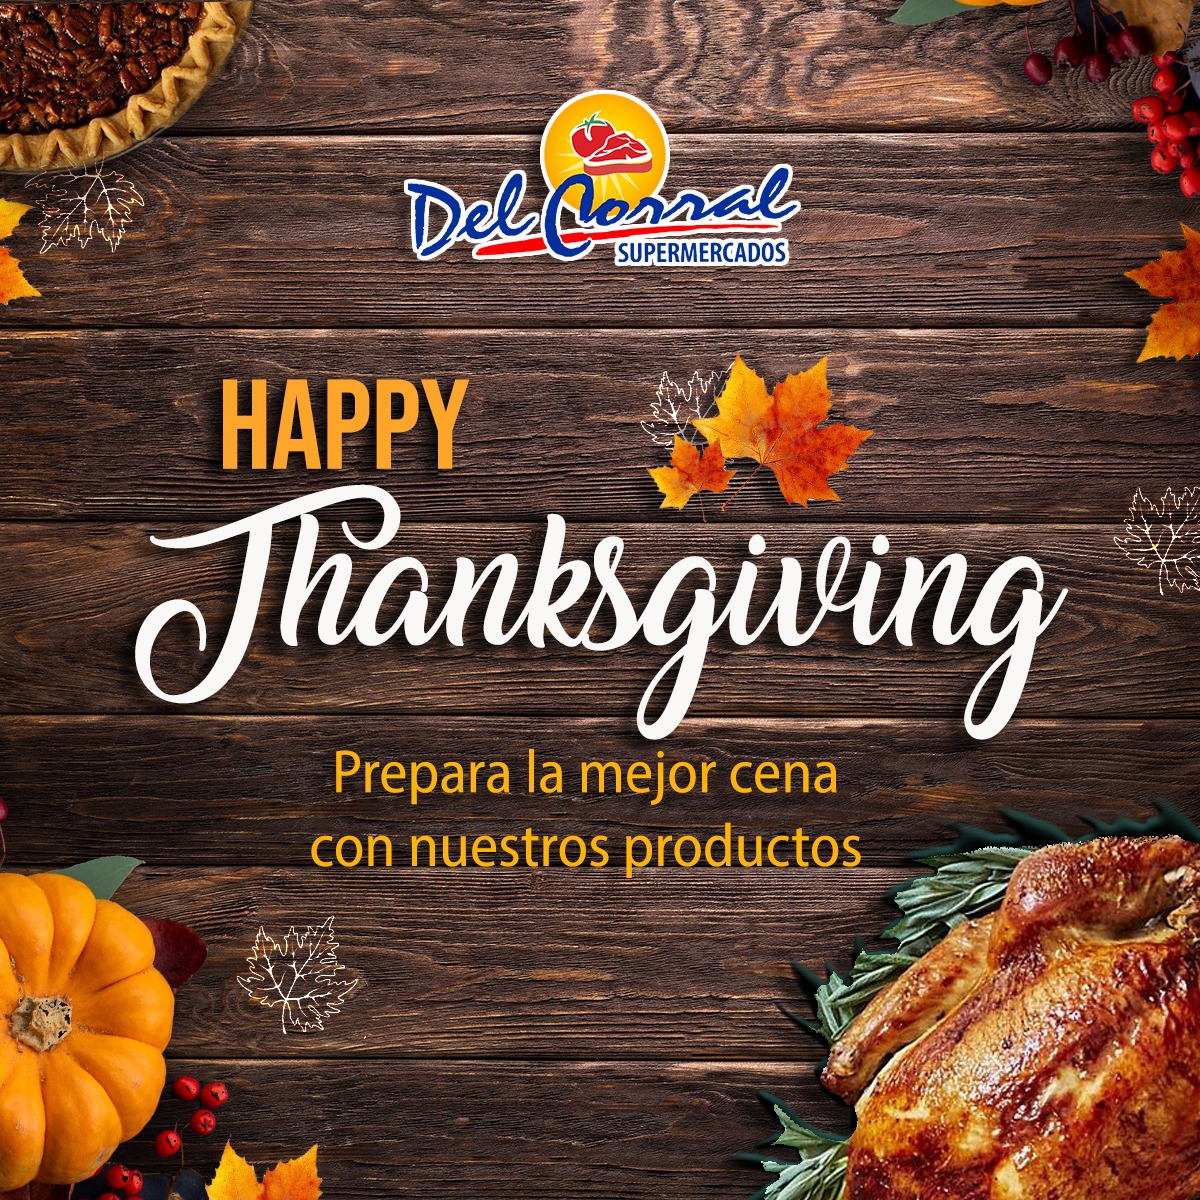 Supermercados Del Corral tiene todo para el Thanksgiving day